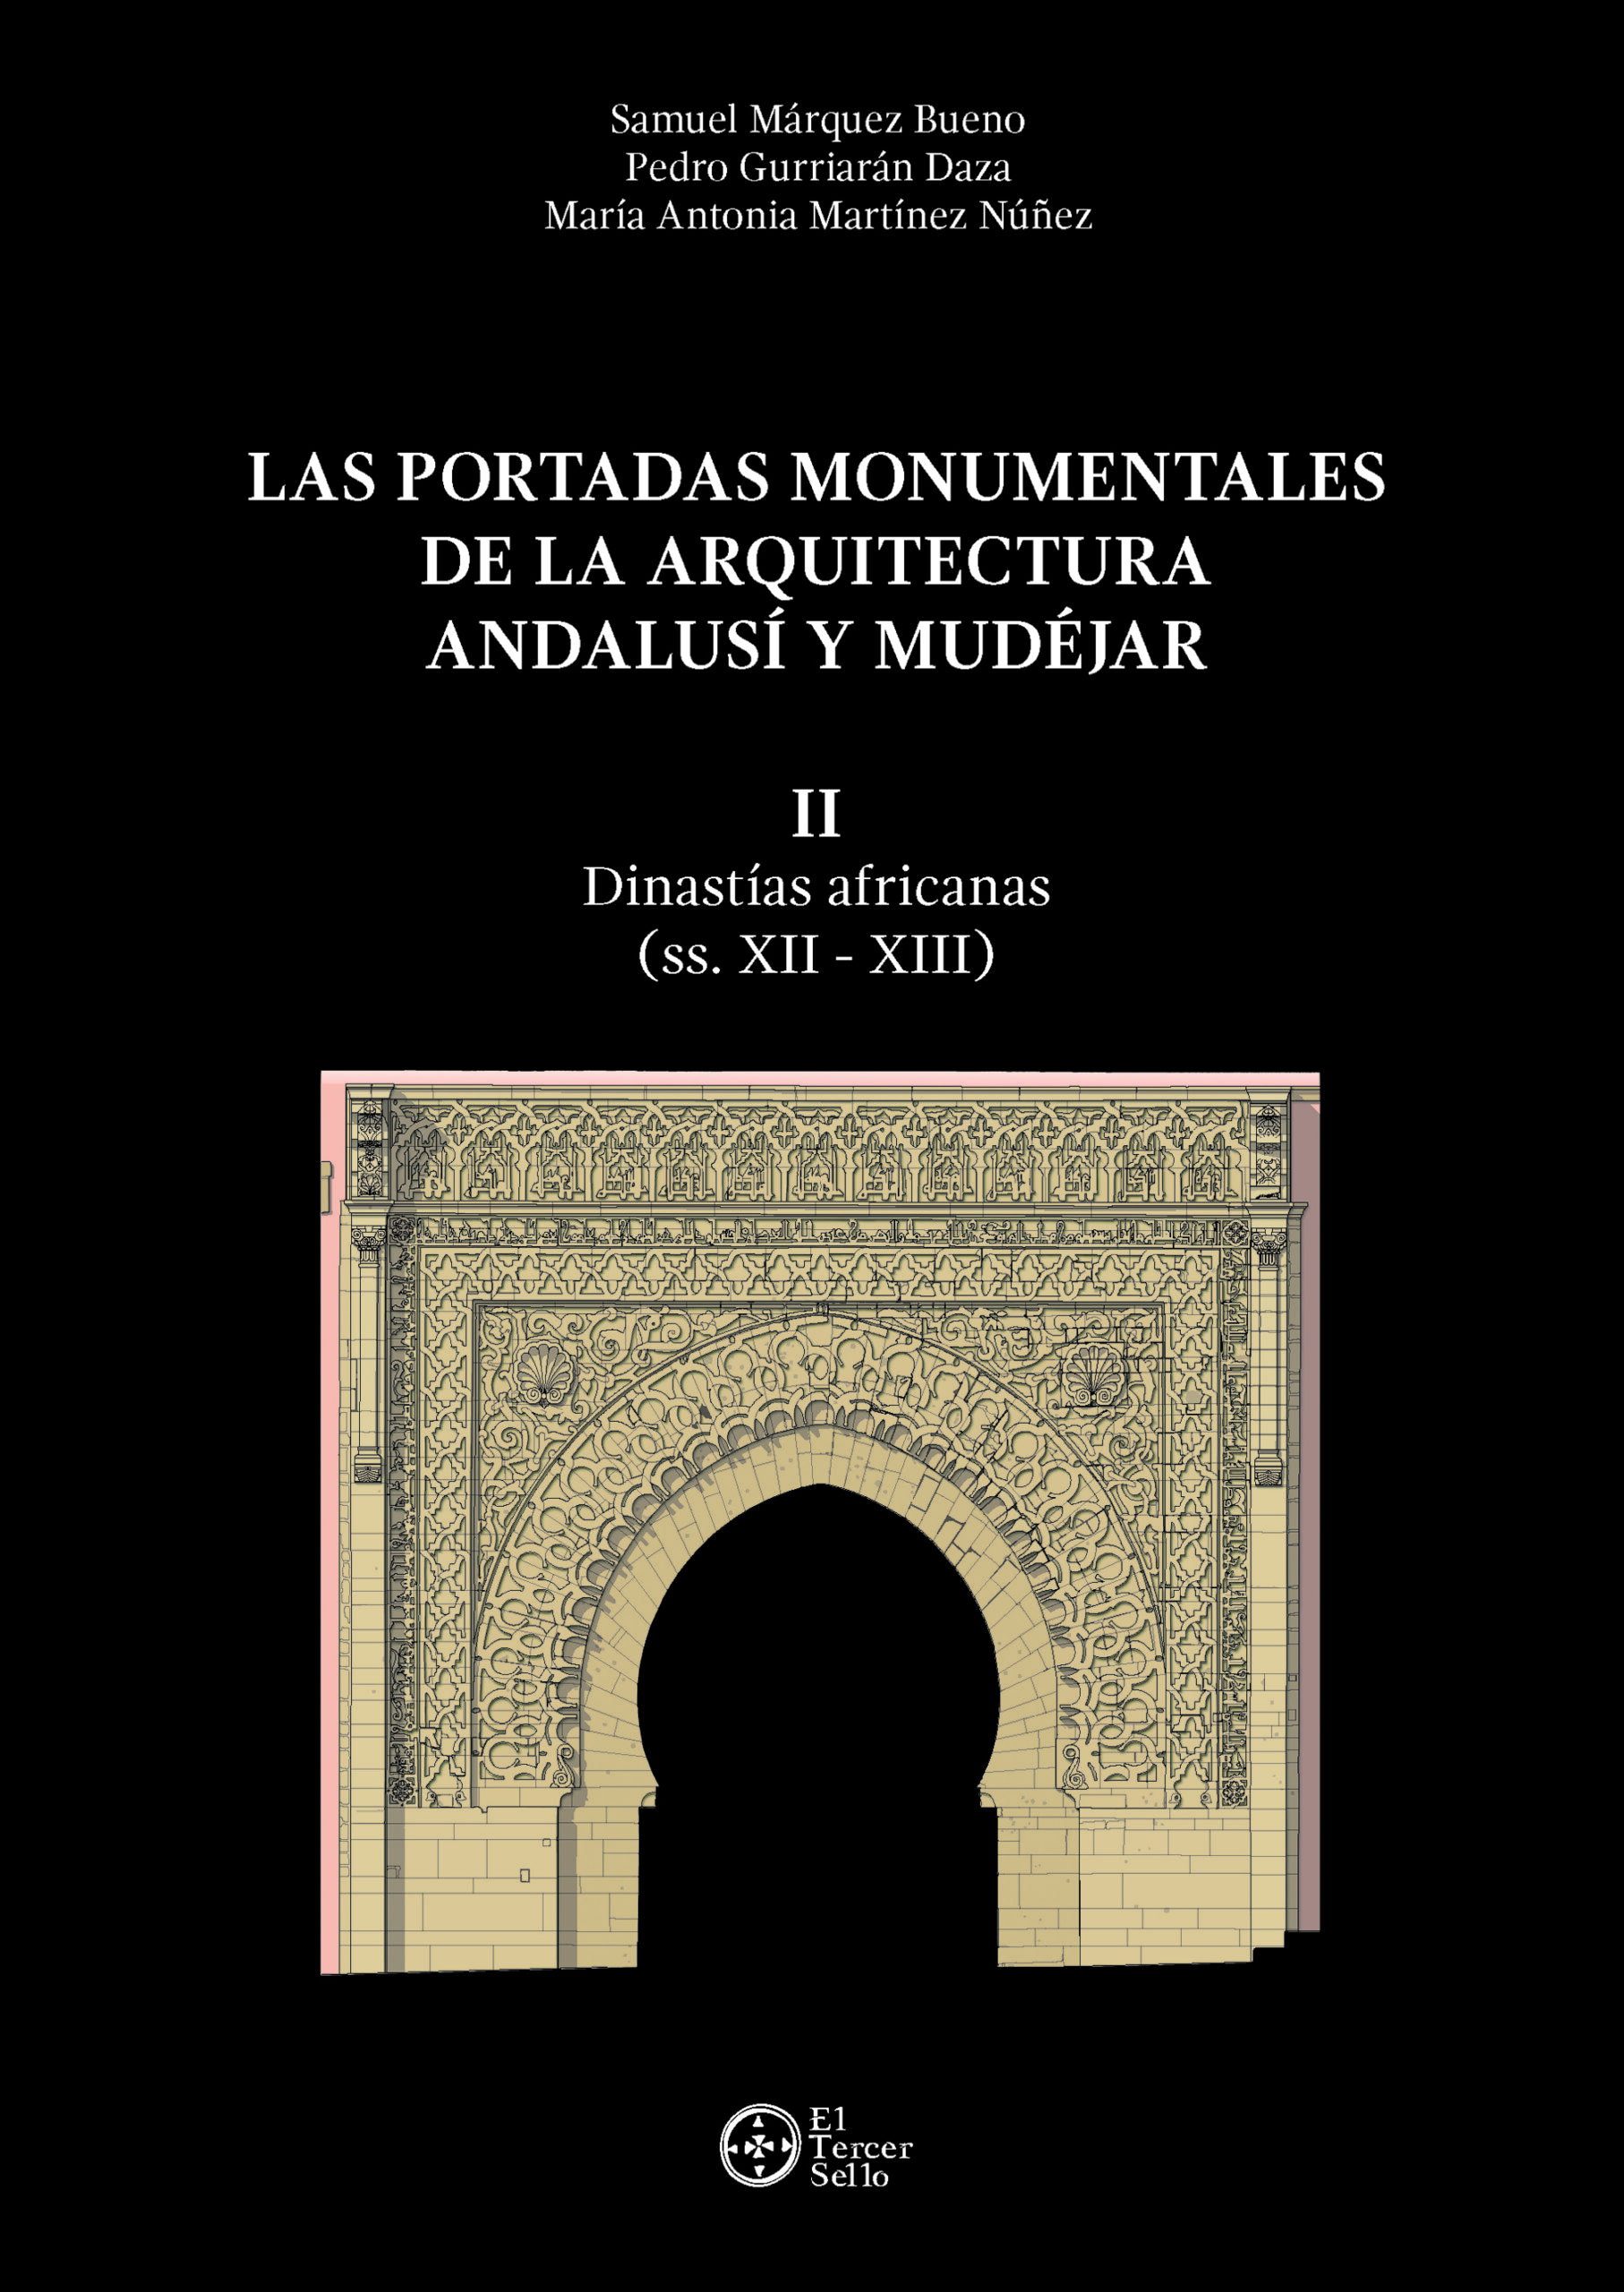 Las portadas monumentales de la arquitectura andalusí y mudéjar